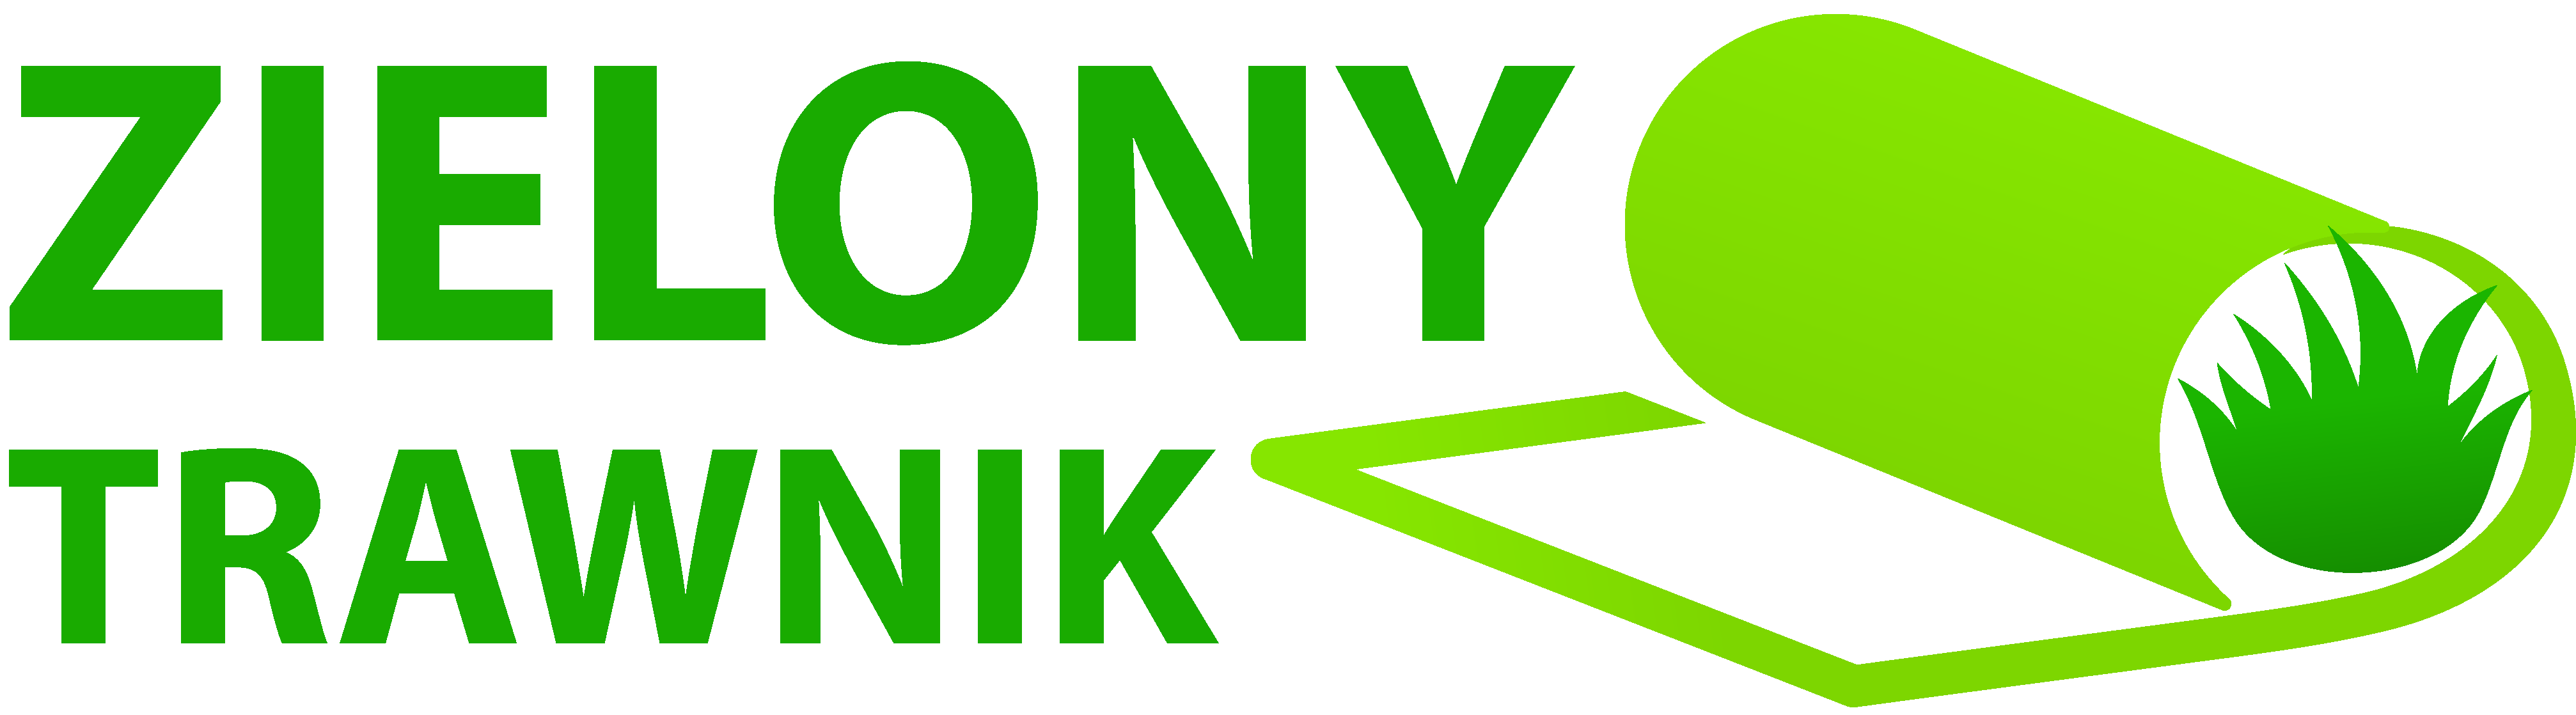 logo zielonytrawnik